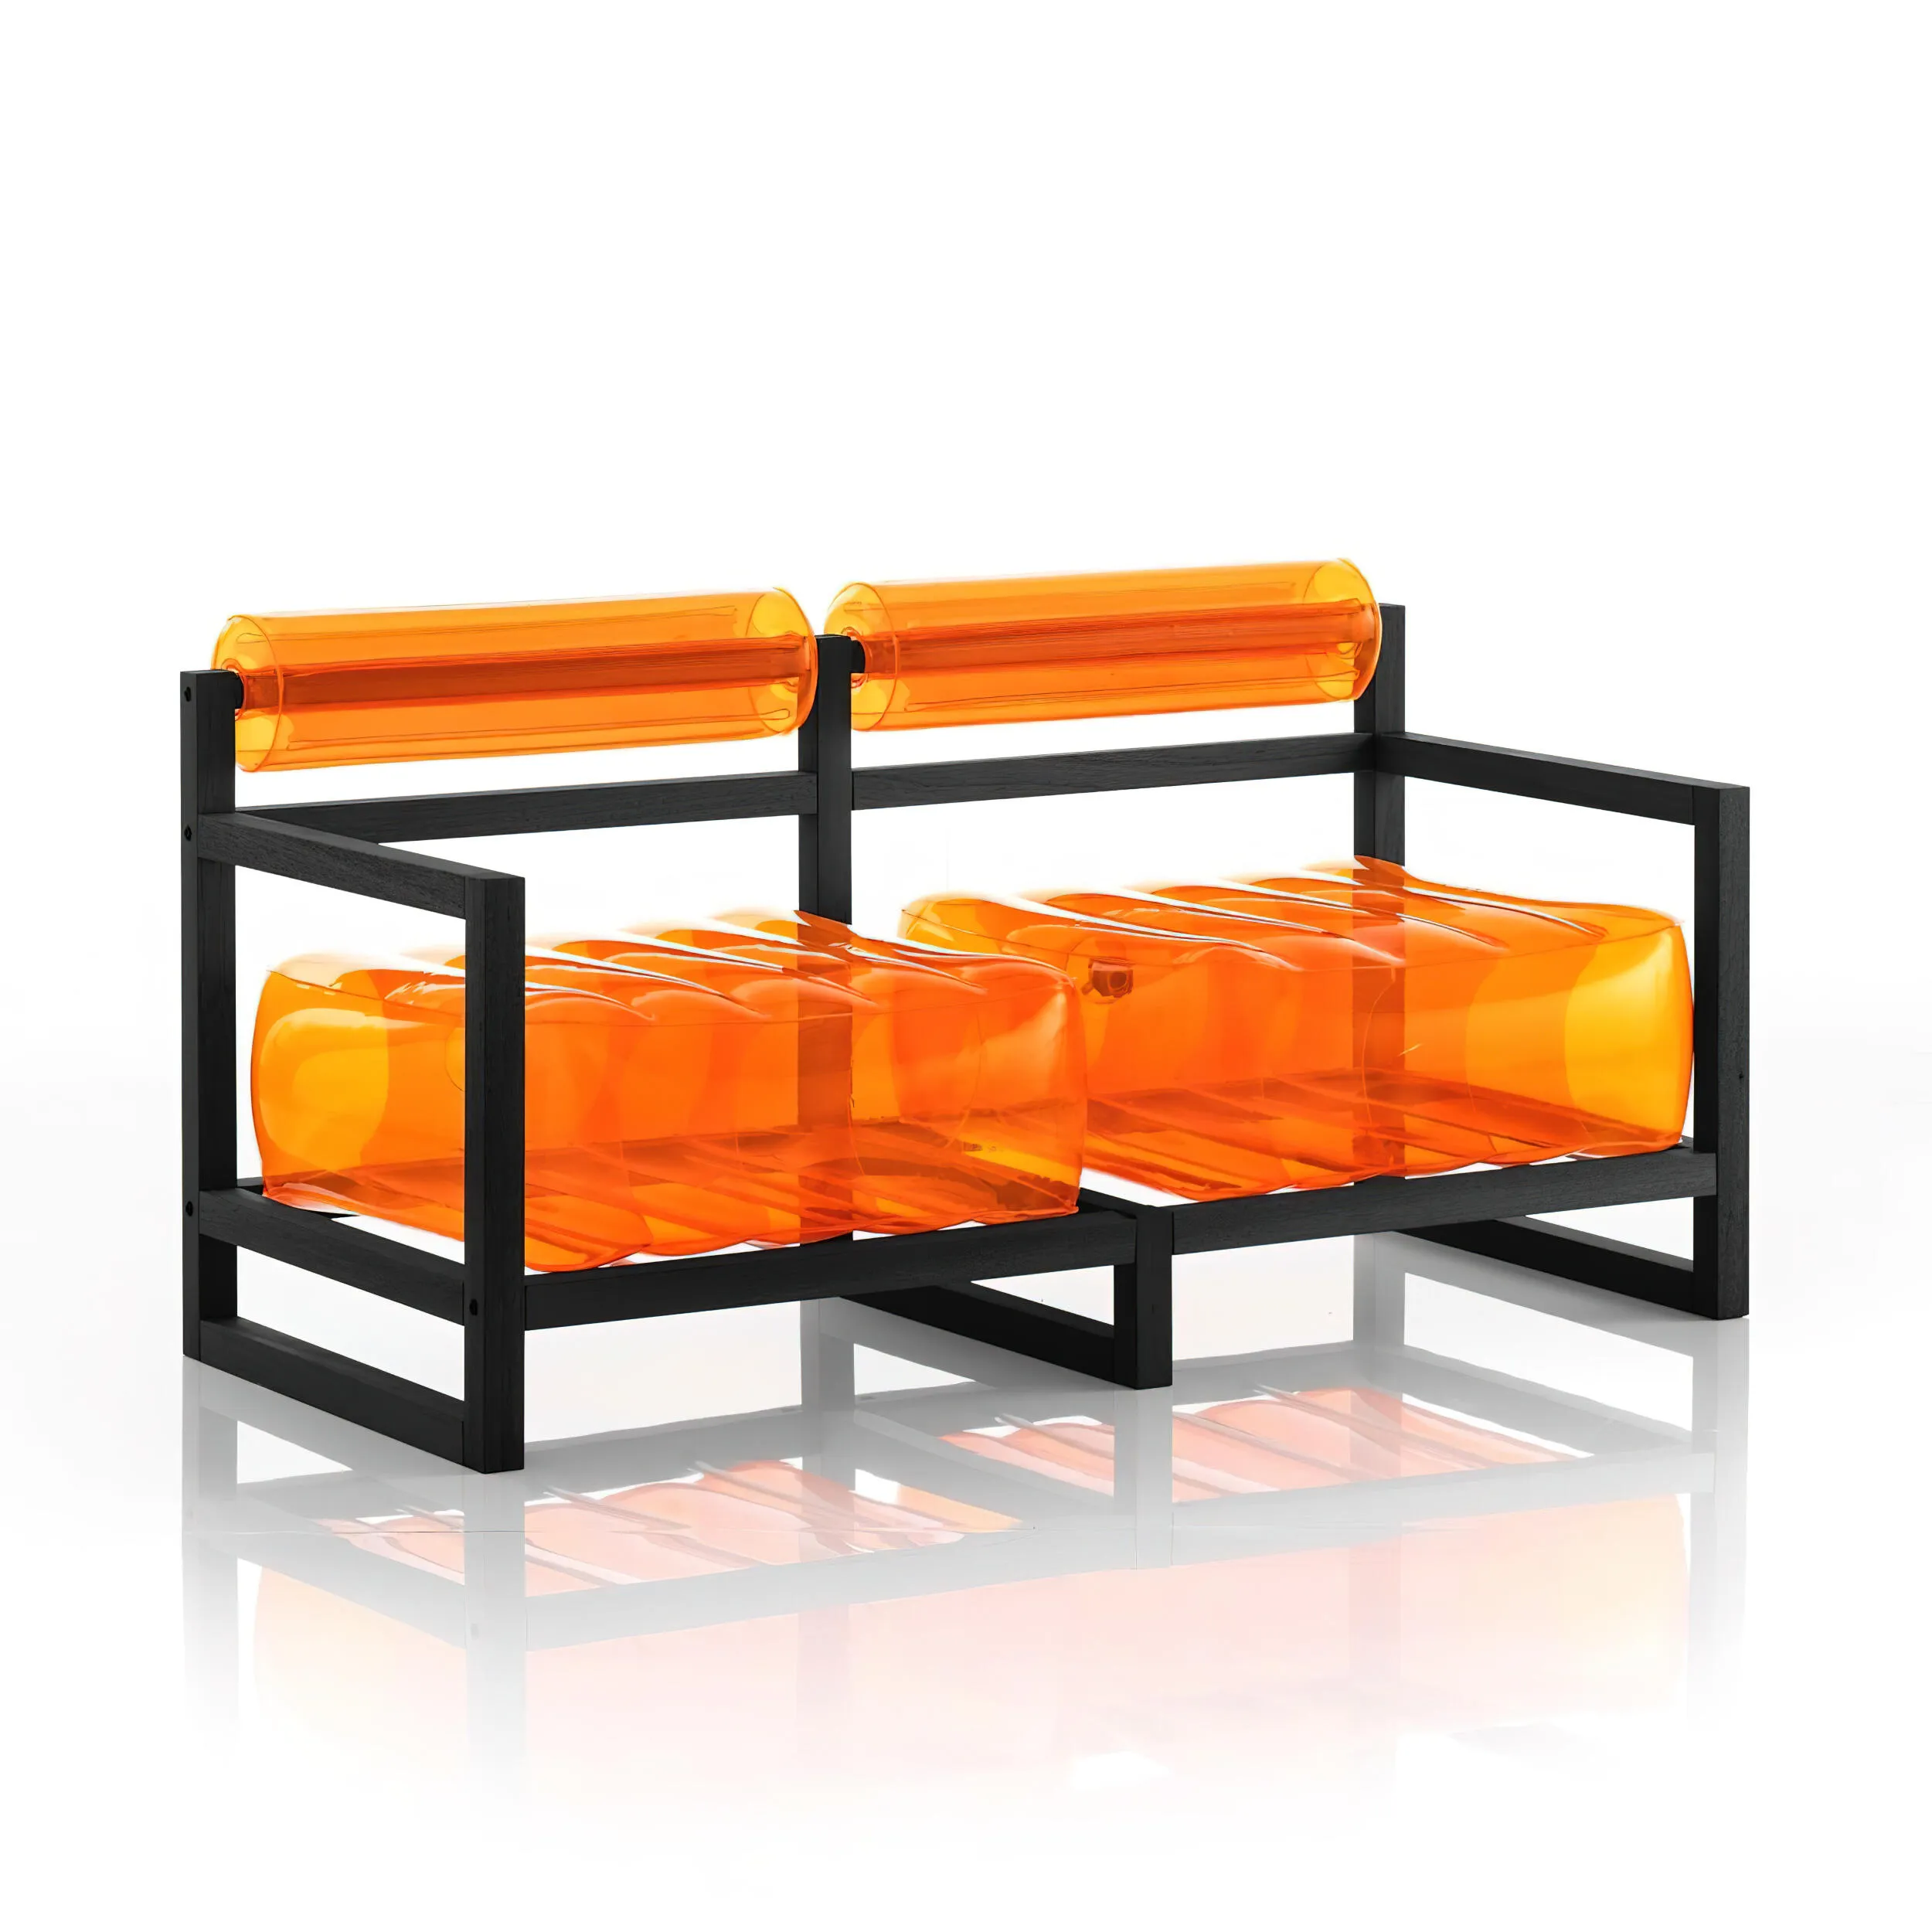 divano Yoko eko struttura in legno nero, dimensioni 62x191xH70 cm peso 18,7 kg, seduta gonfiabile in TPU colore arancio